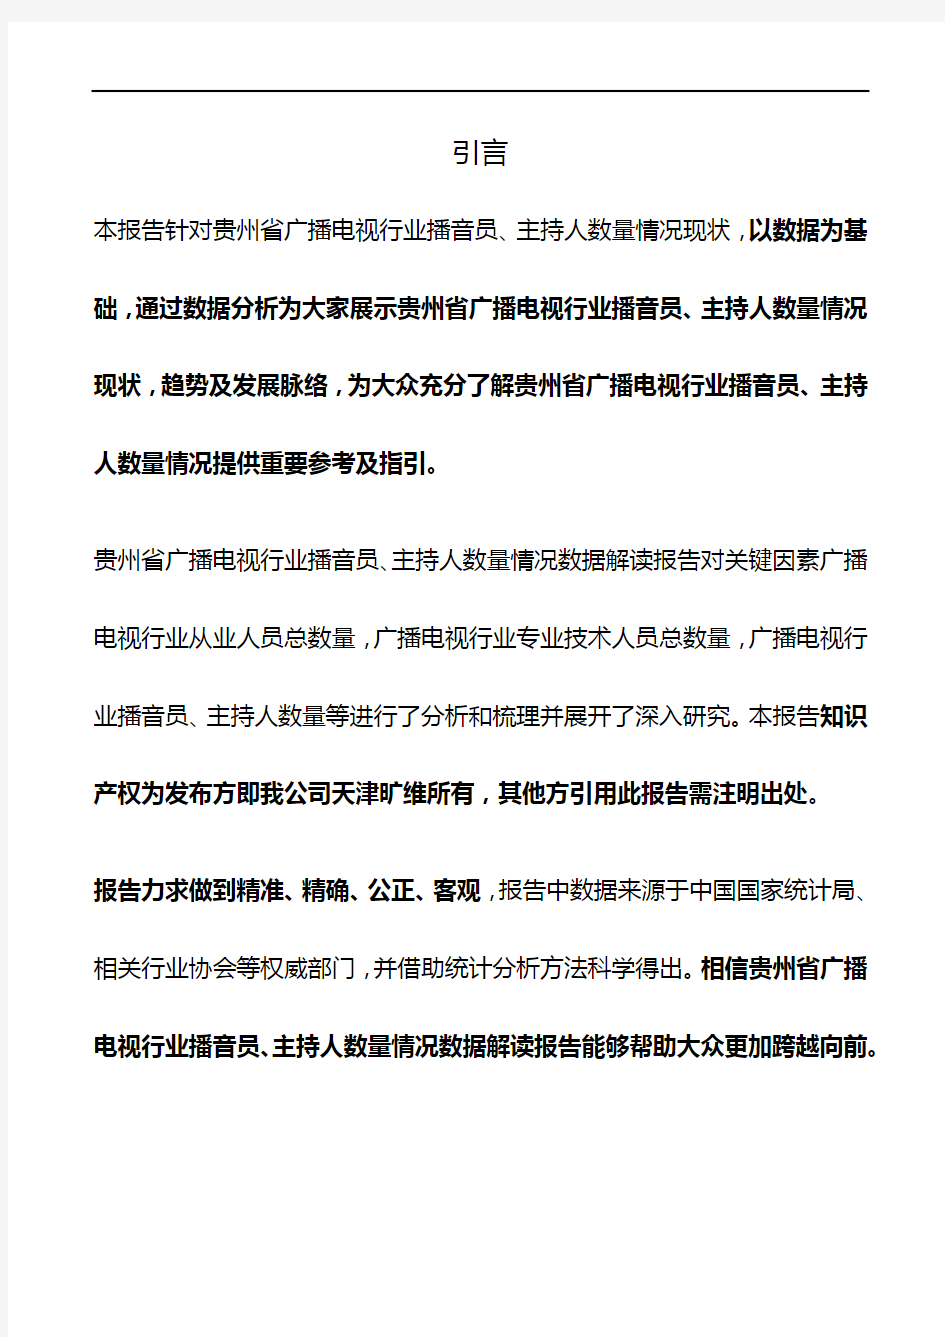 贵州省广播电视行业播音员、主持人数量情况3年数据解读报告2019版